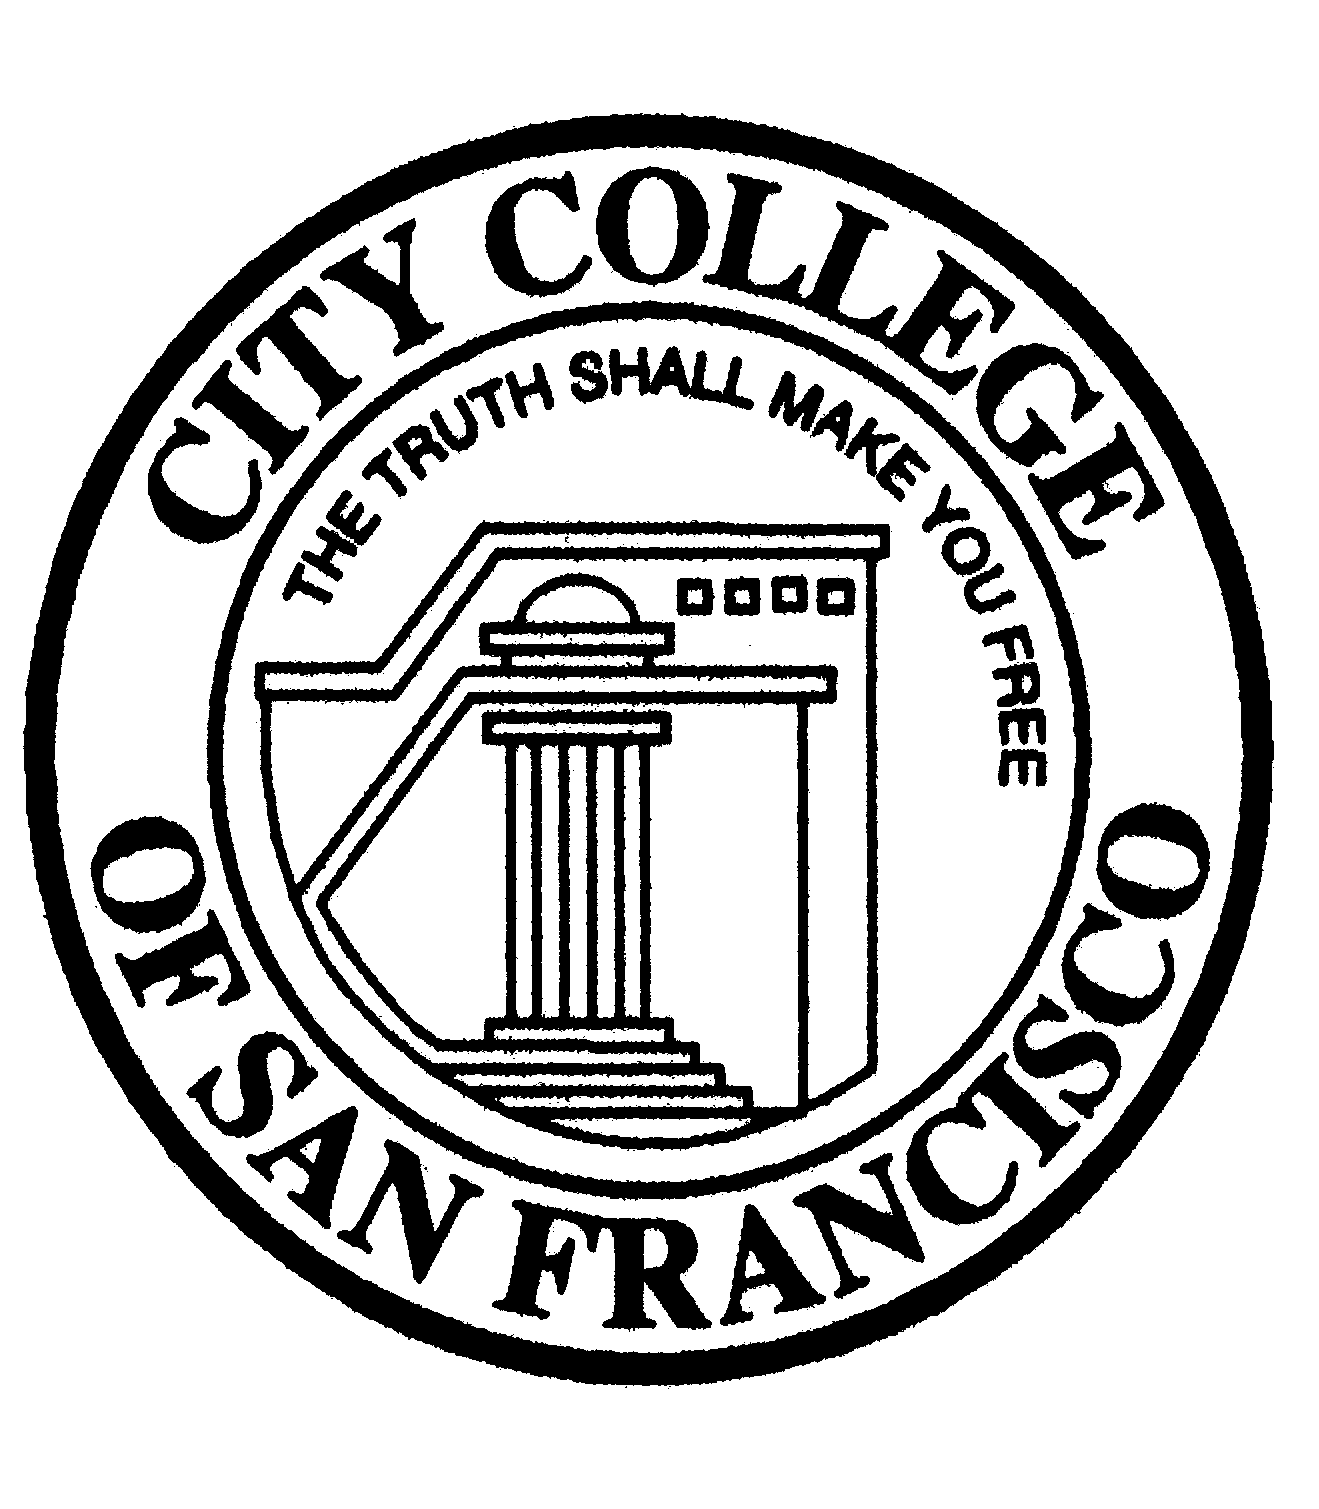 CCSF Logo